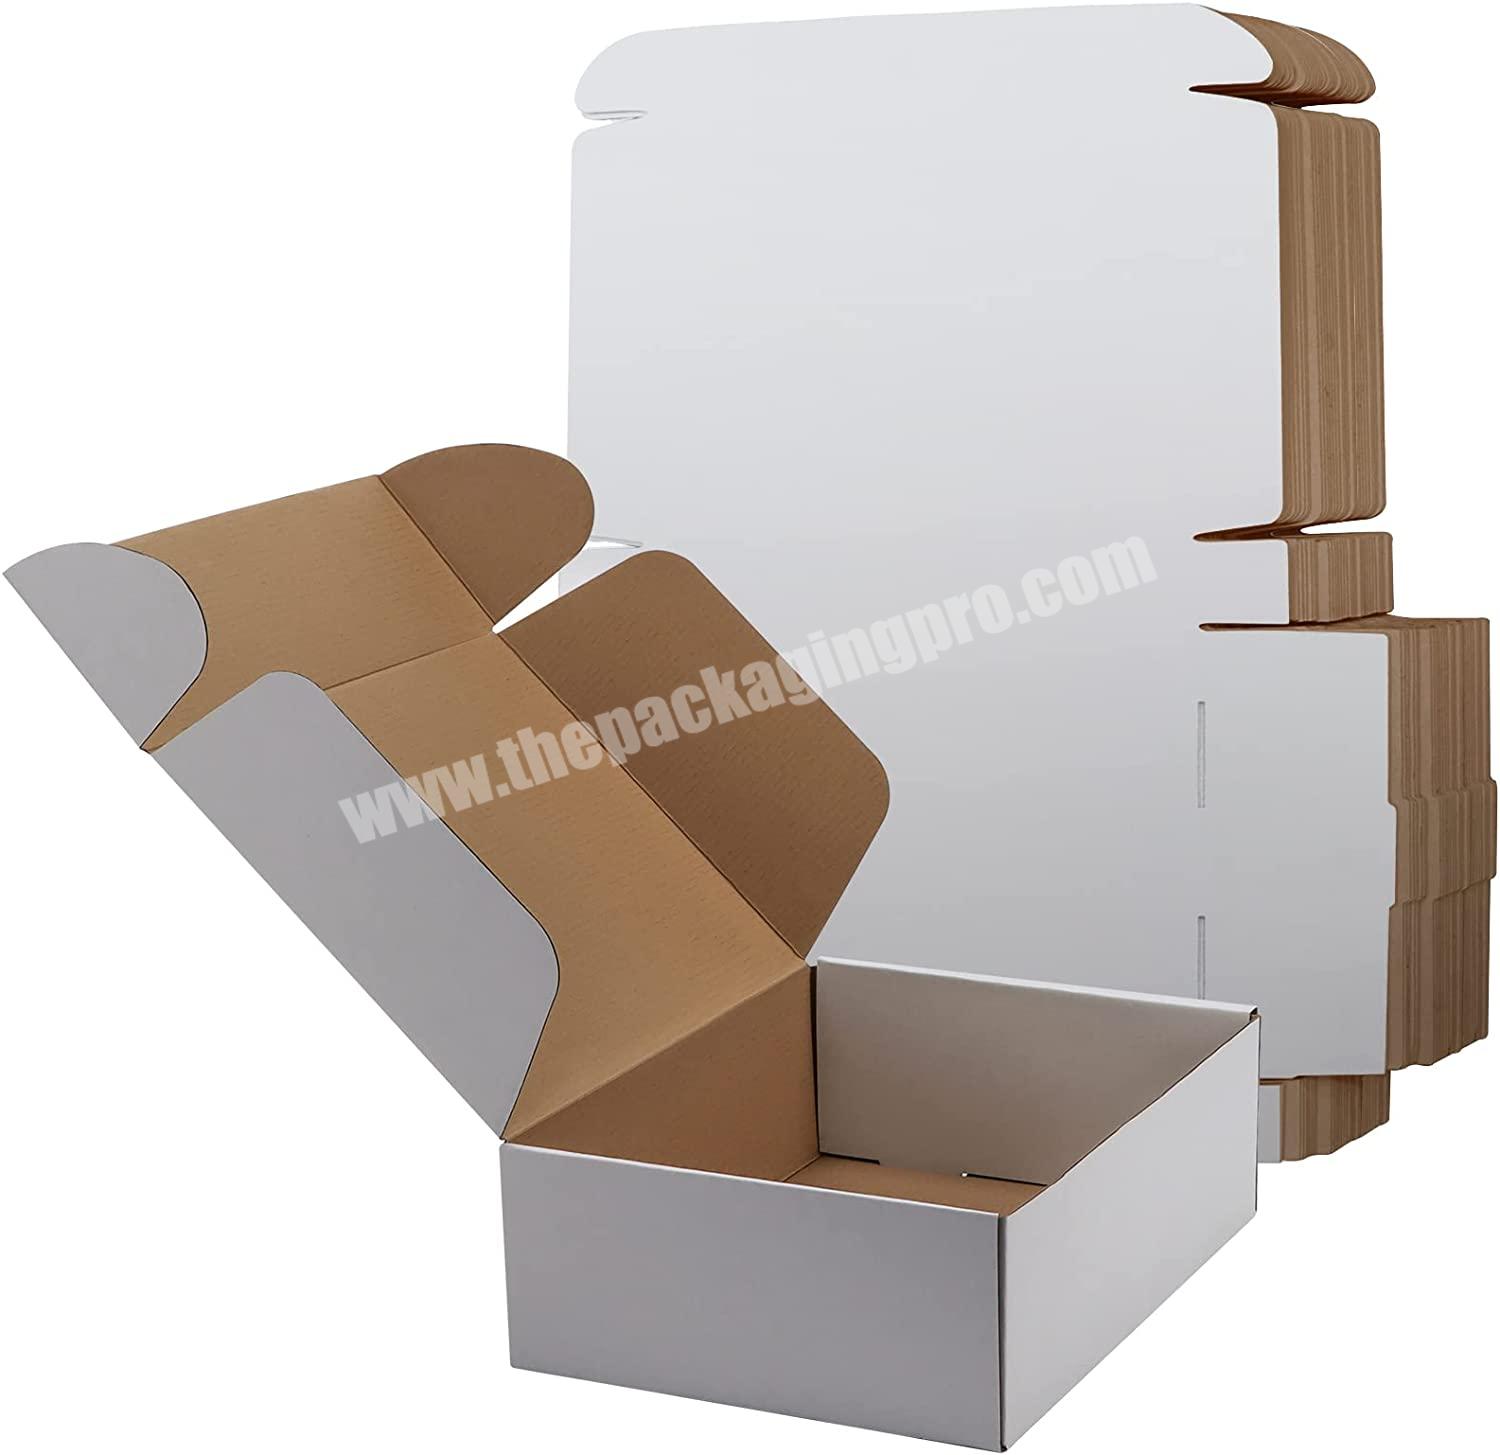 wholesale medium size shipping box white corrugated cardboard box